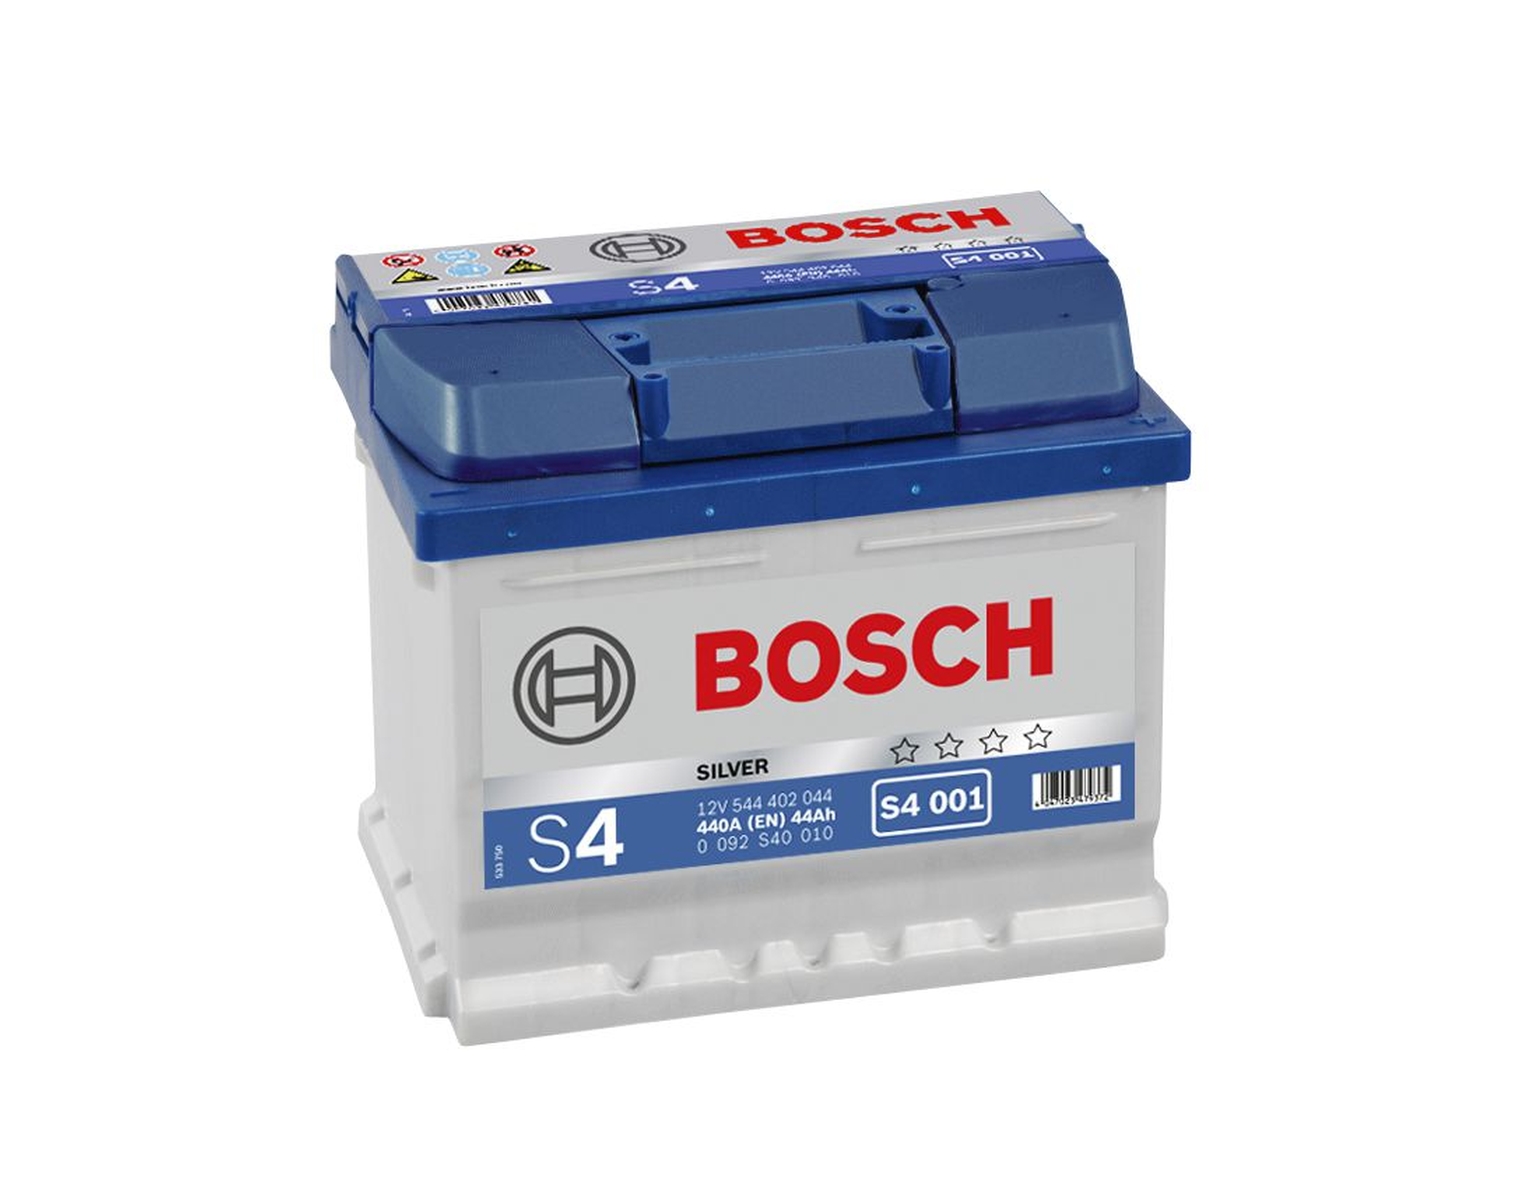 Bosch Batterie de démarrage 12V 544 402 044 44Ah, S4 001 T4